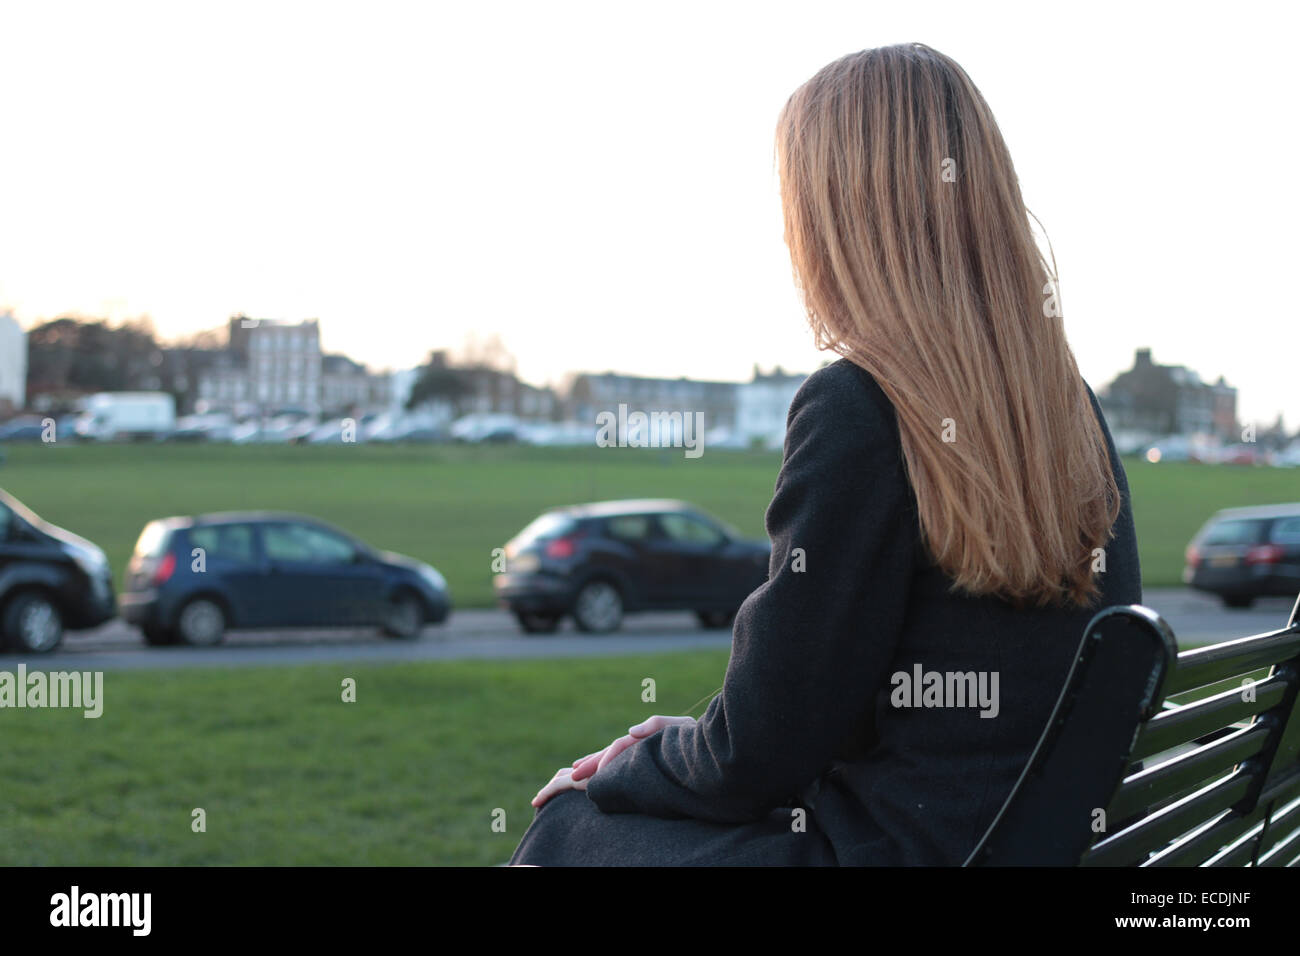 Vista posteriore del colpo di una giovane donna seduta su una panchina, esaminando la distanza in un parco con le automobili parcheggiate. Foto Stock